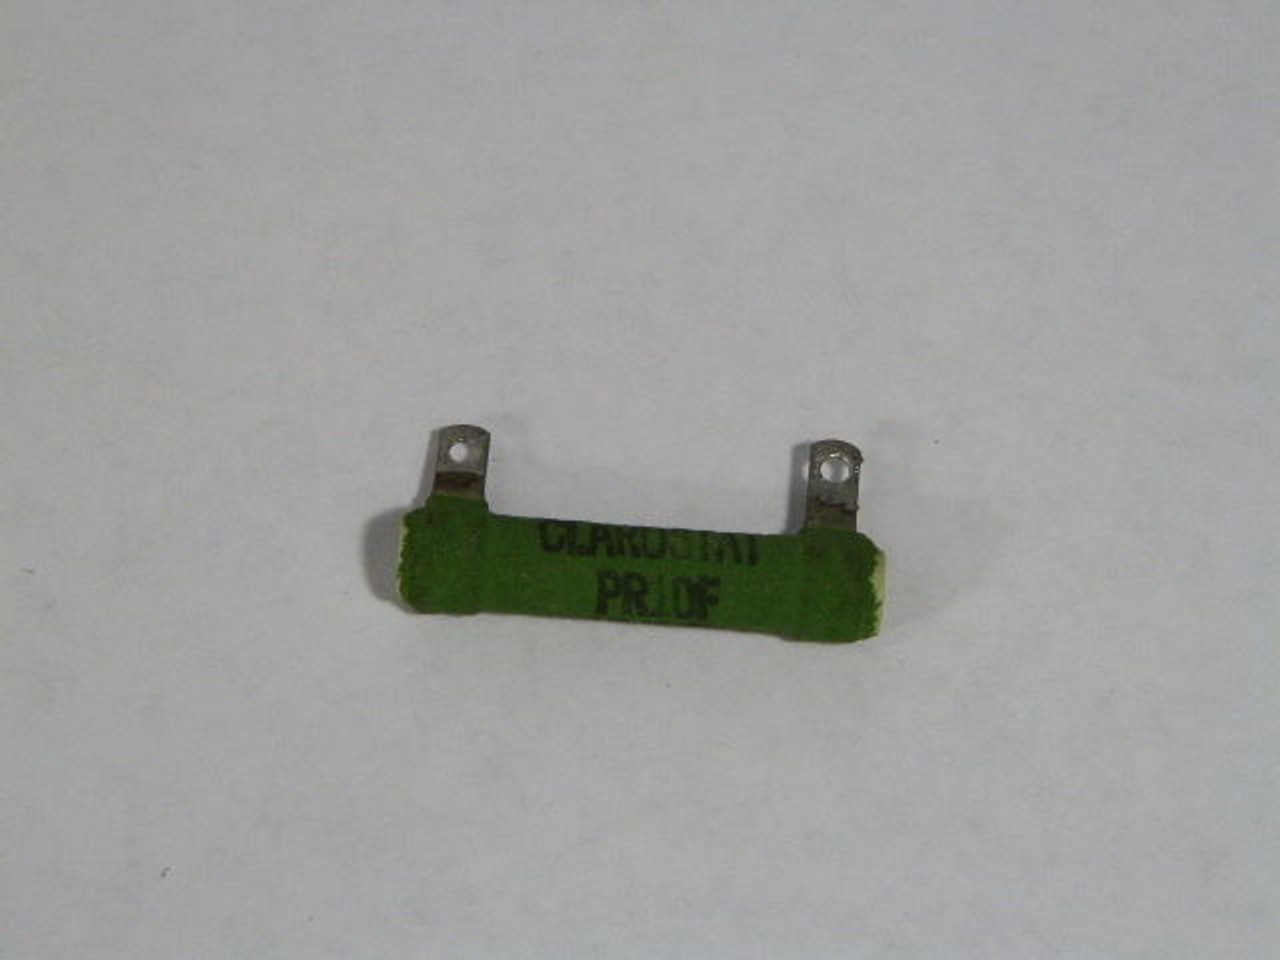 Clarostat PR10F Wirewound Resistor 15 kOhm USED